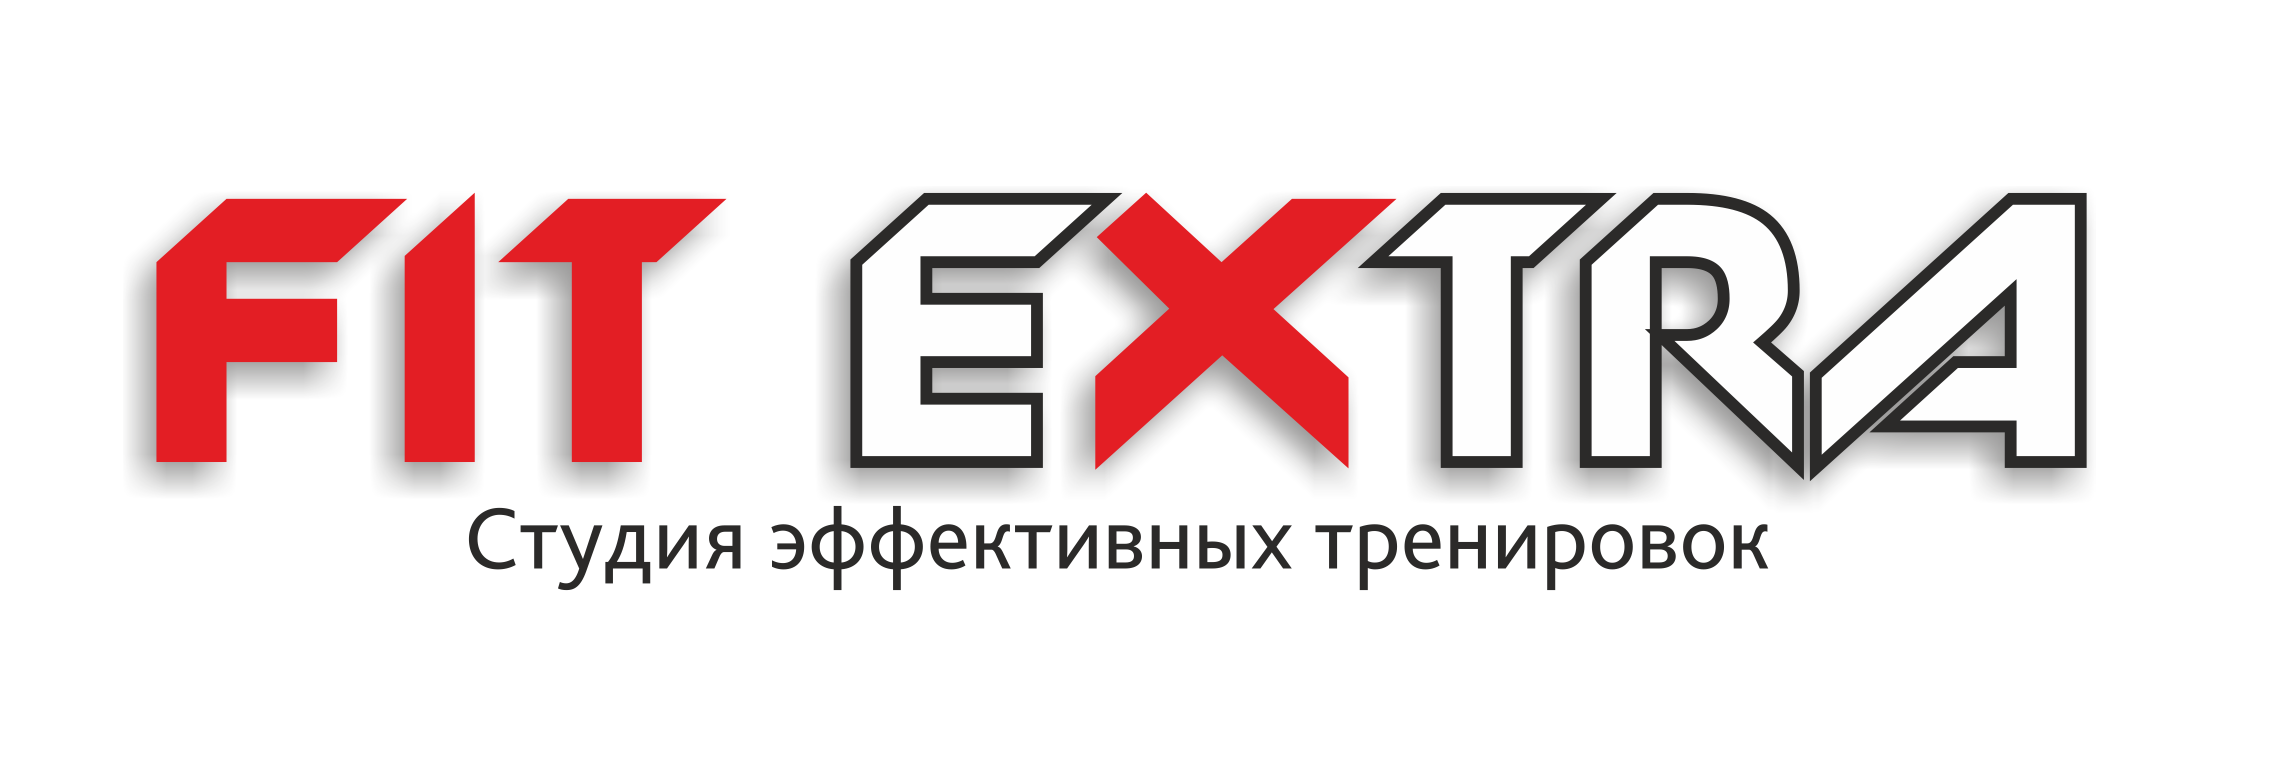 ЭМС Казань | Fitextra